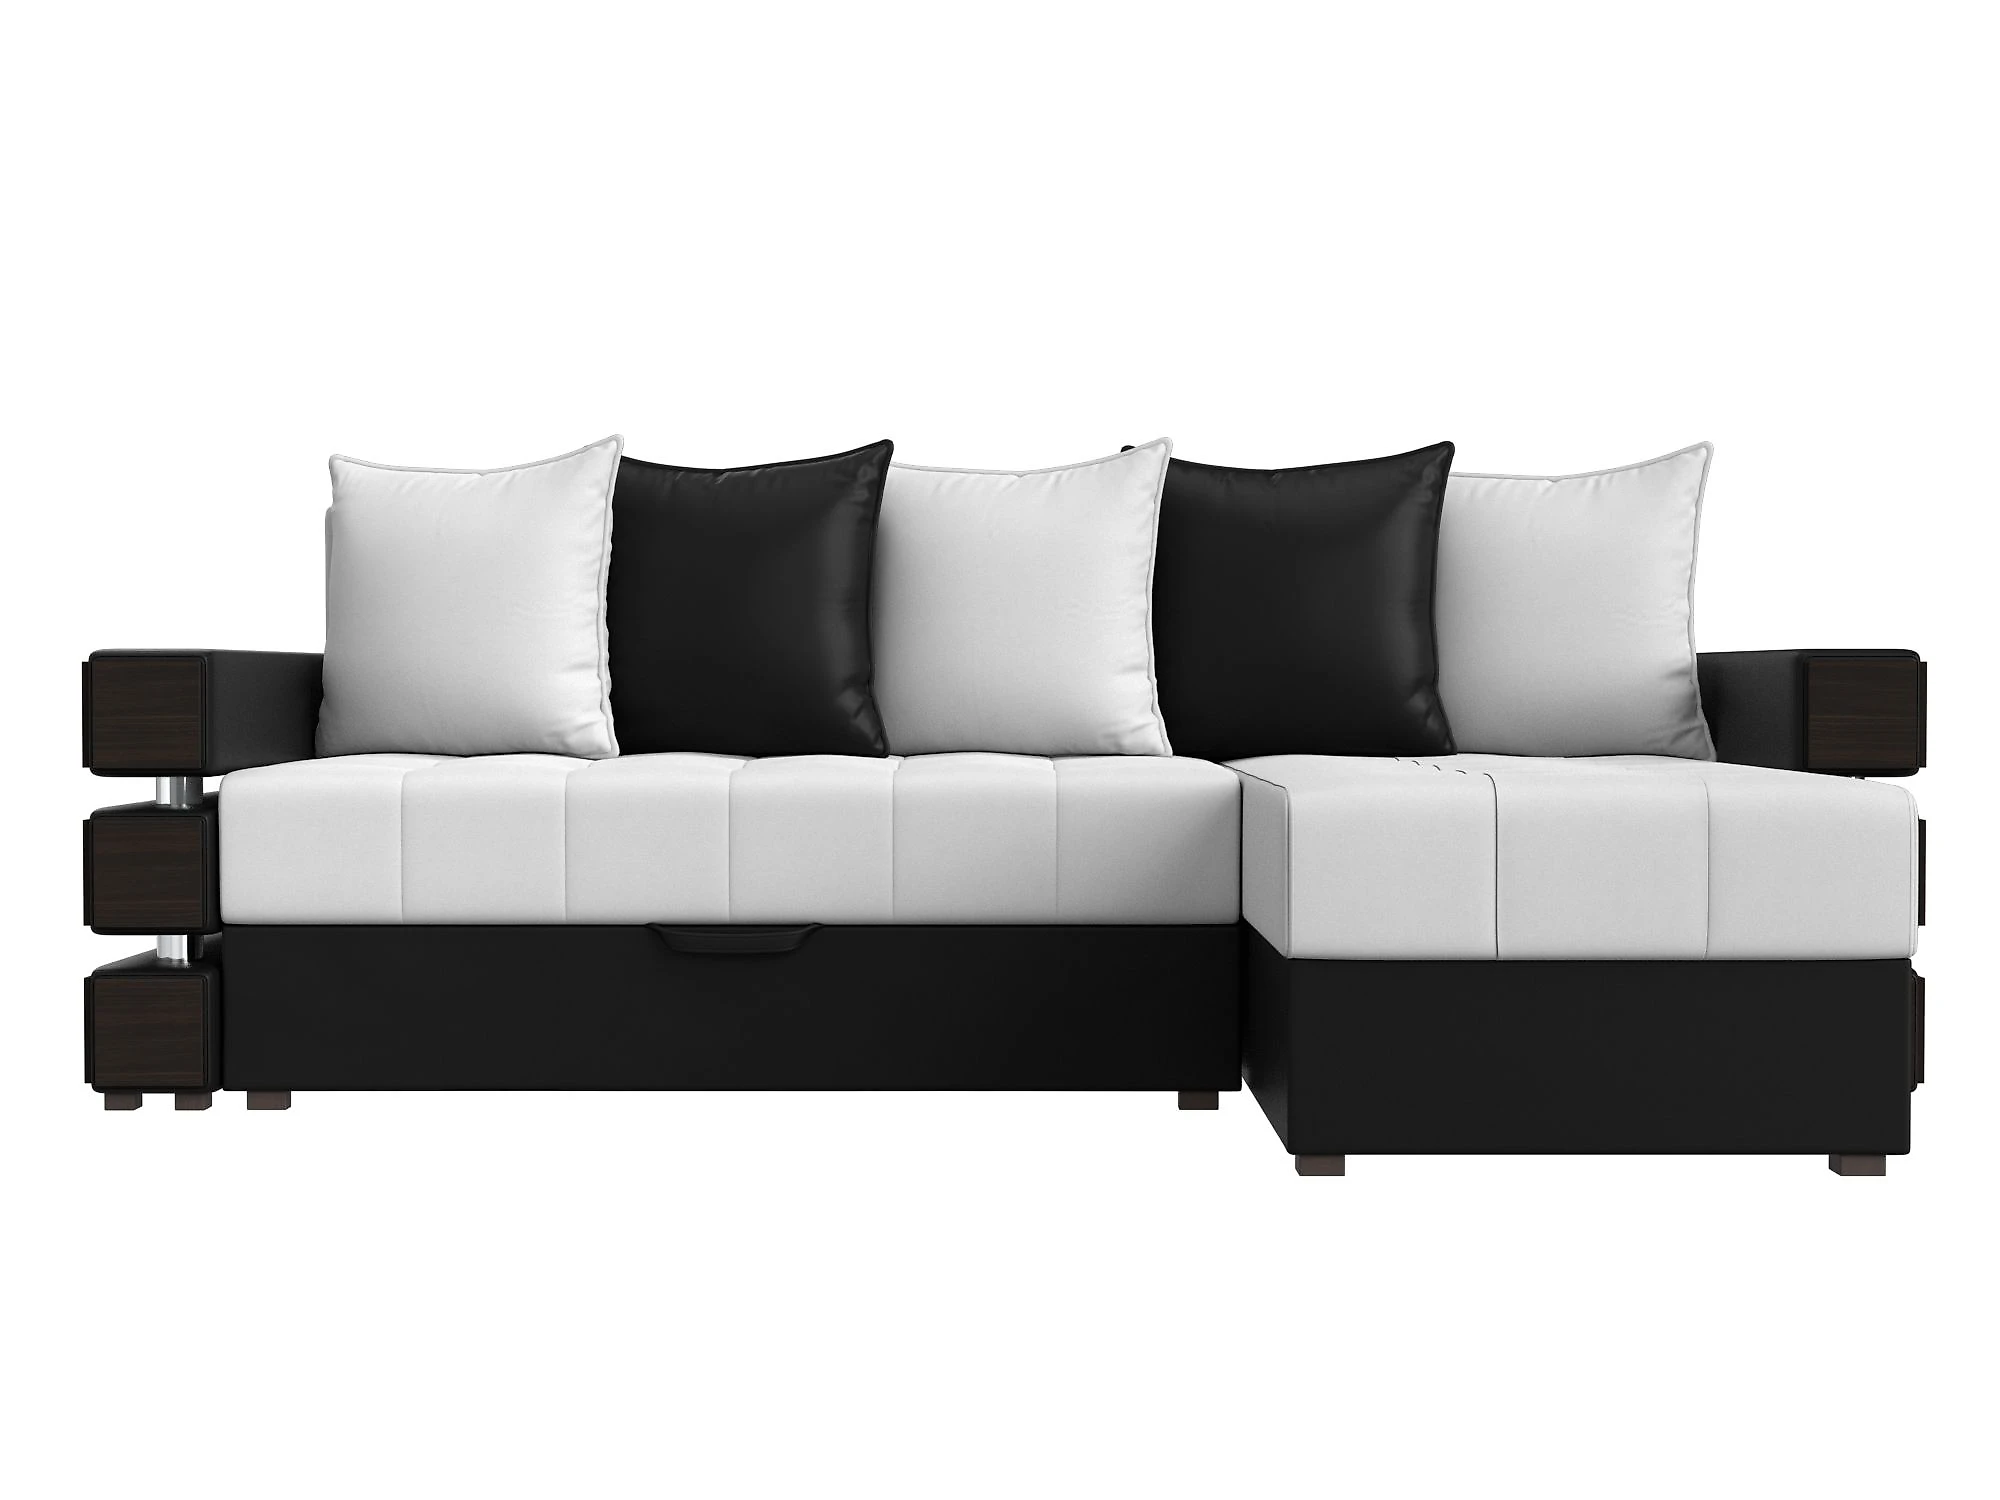  кожаный диван еврокнижка Венеция Дизайн 24